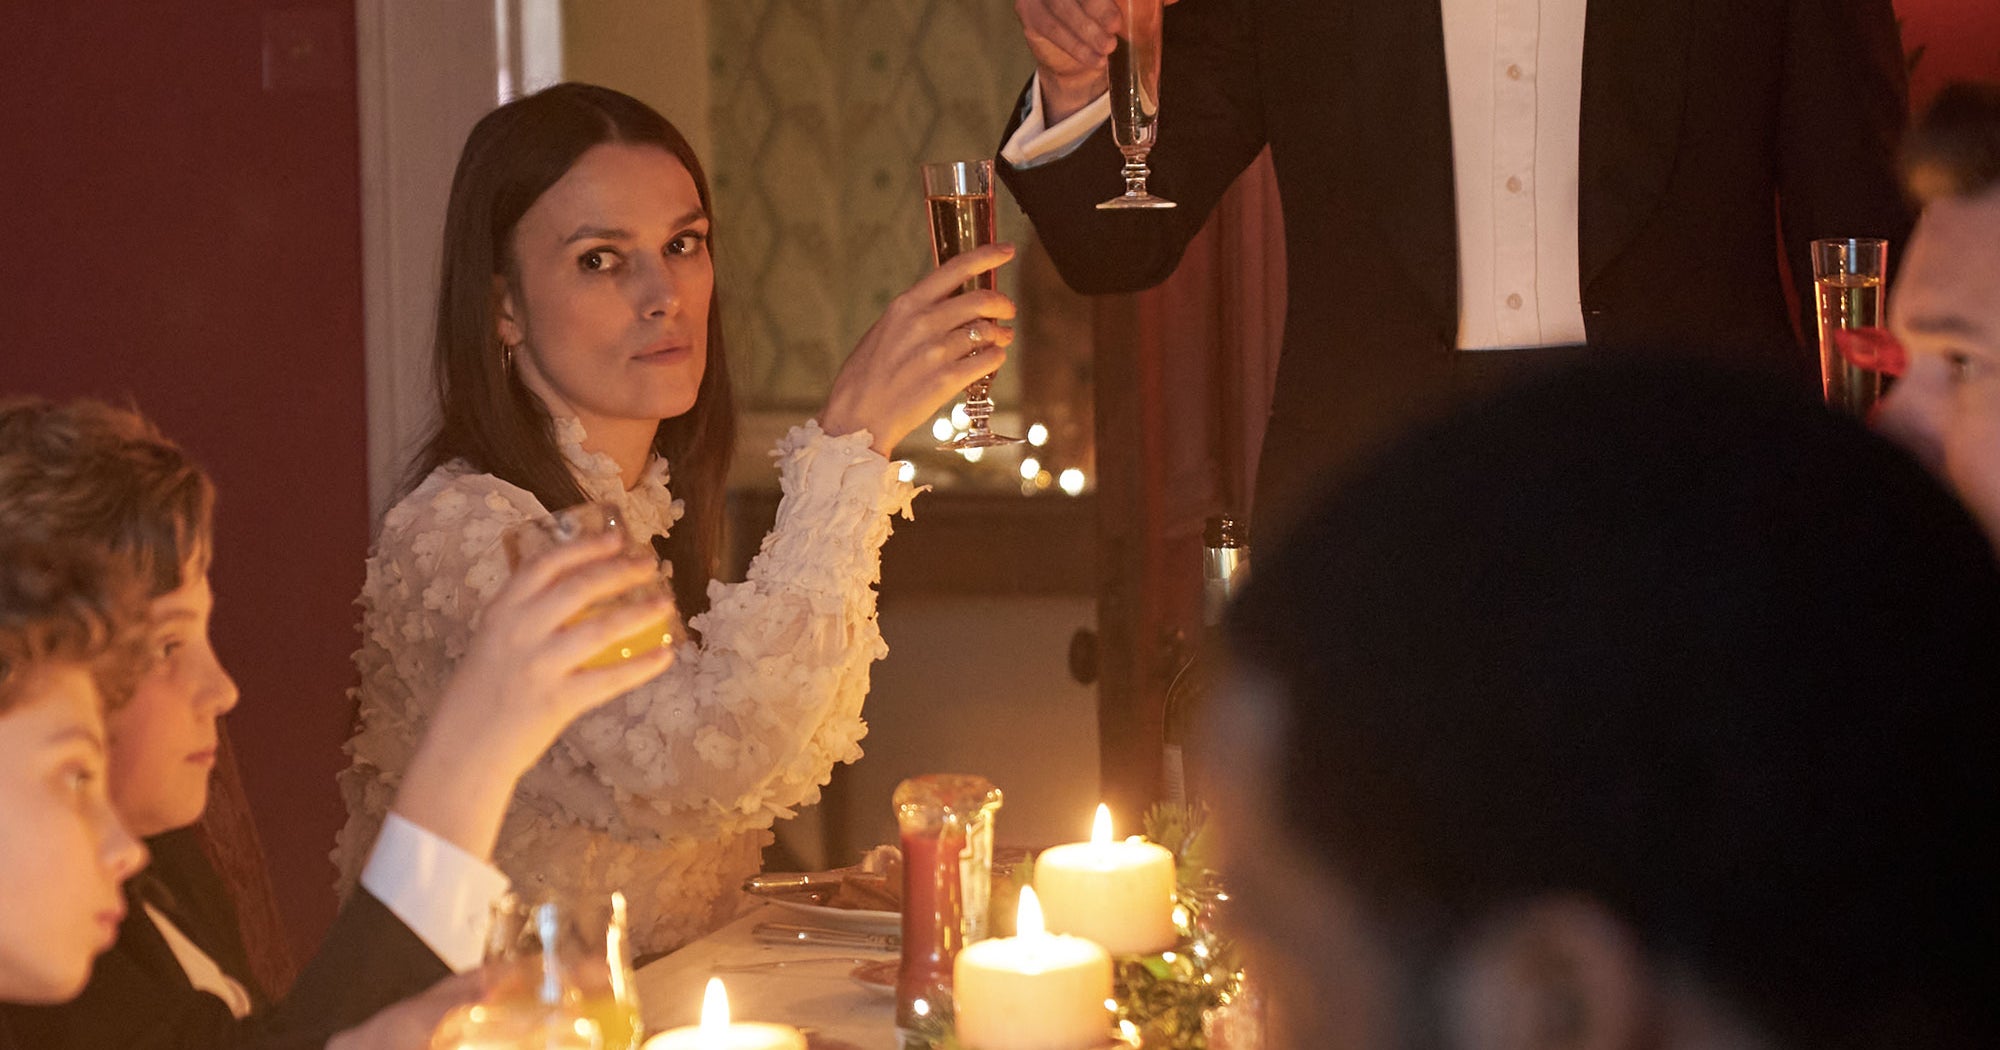 New Christmas Film 'Silent Night' Is A Bleak Horror